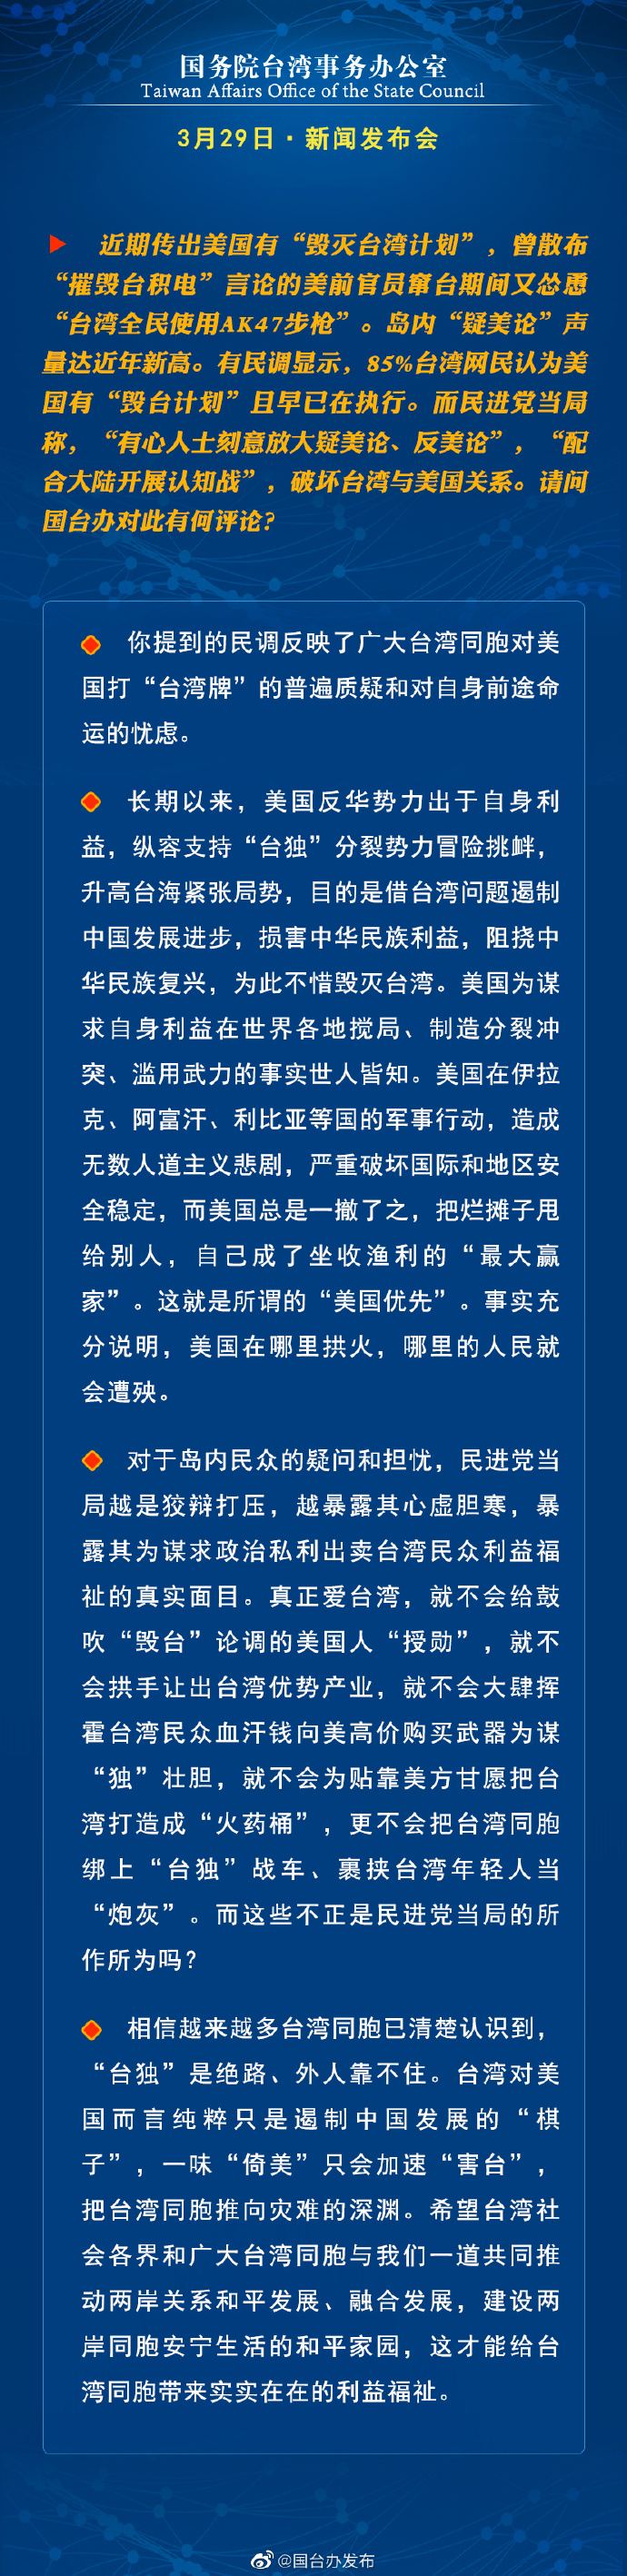 国务院台湾事务办公室3月29日·新闻发布会